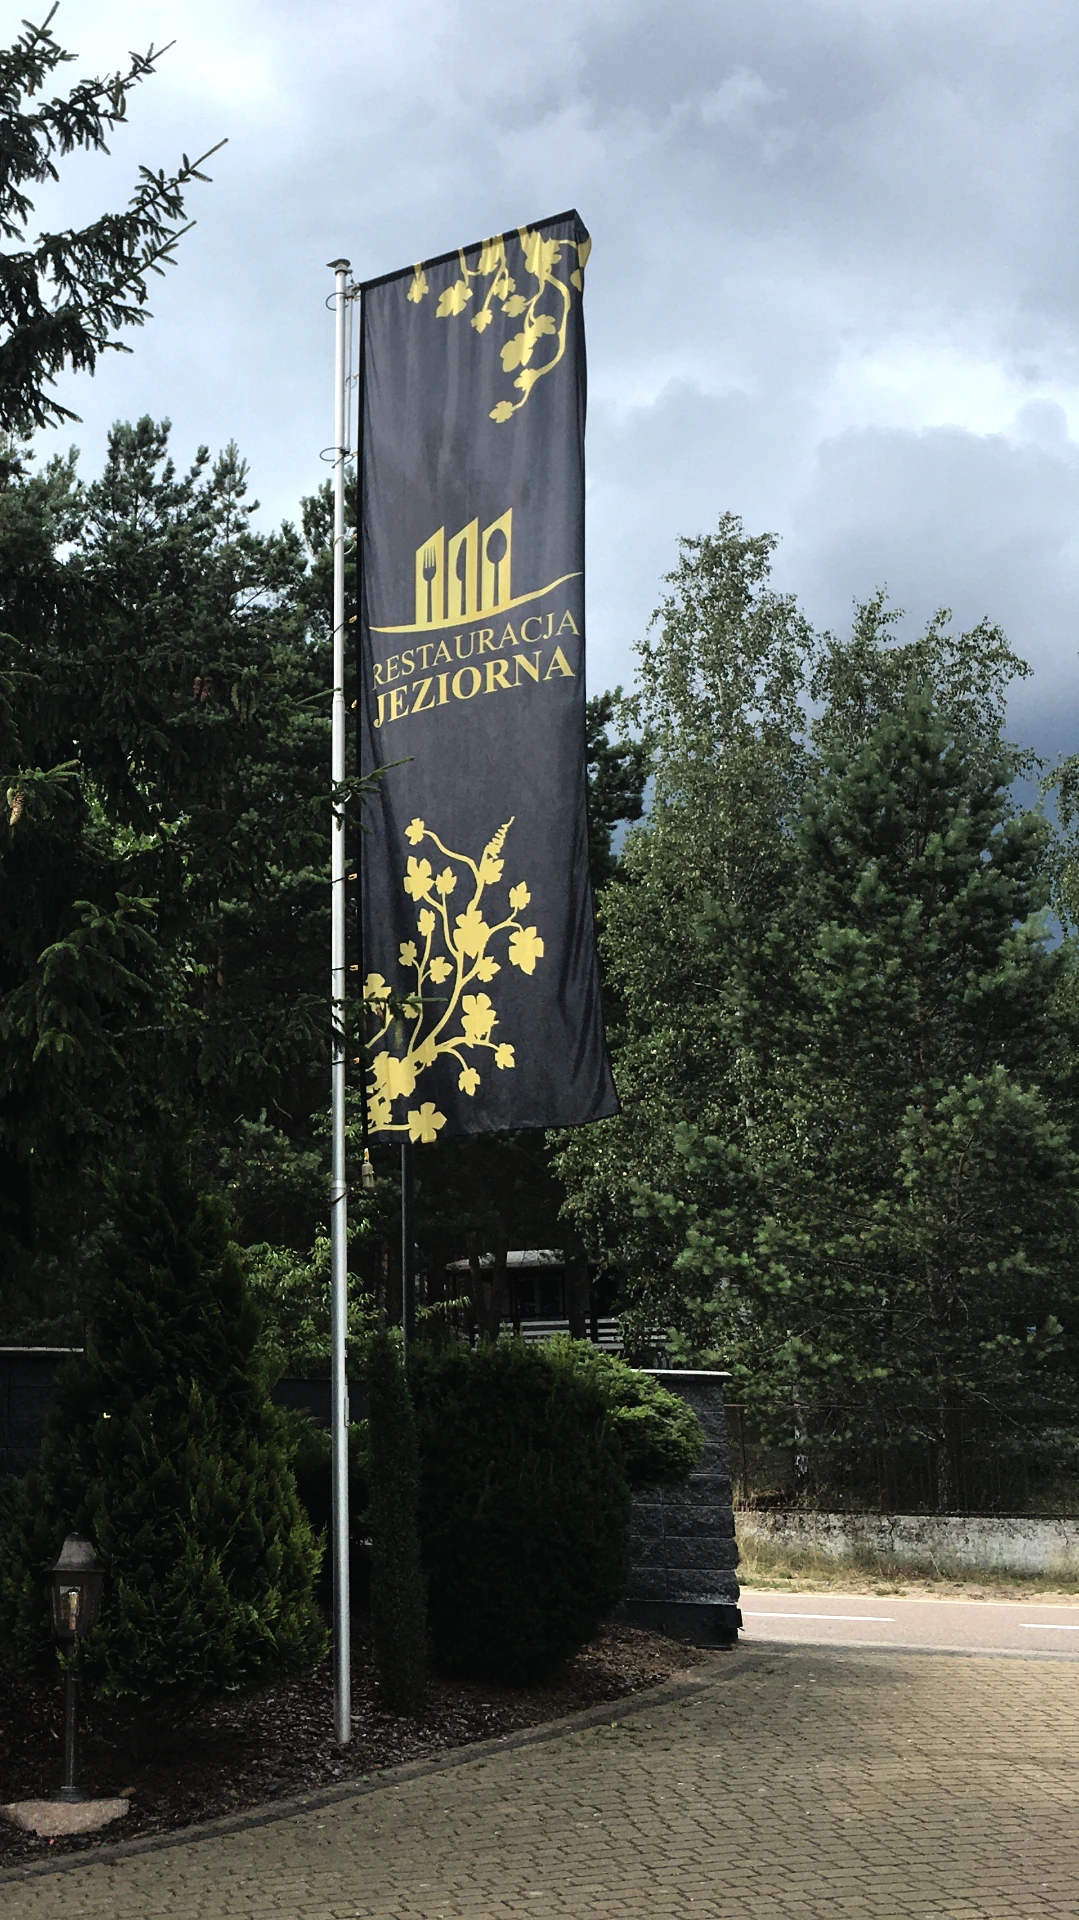 Flaga z logo restauracji Jeziorna wykonana z poliestru